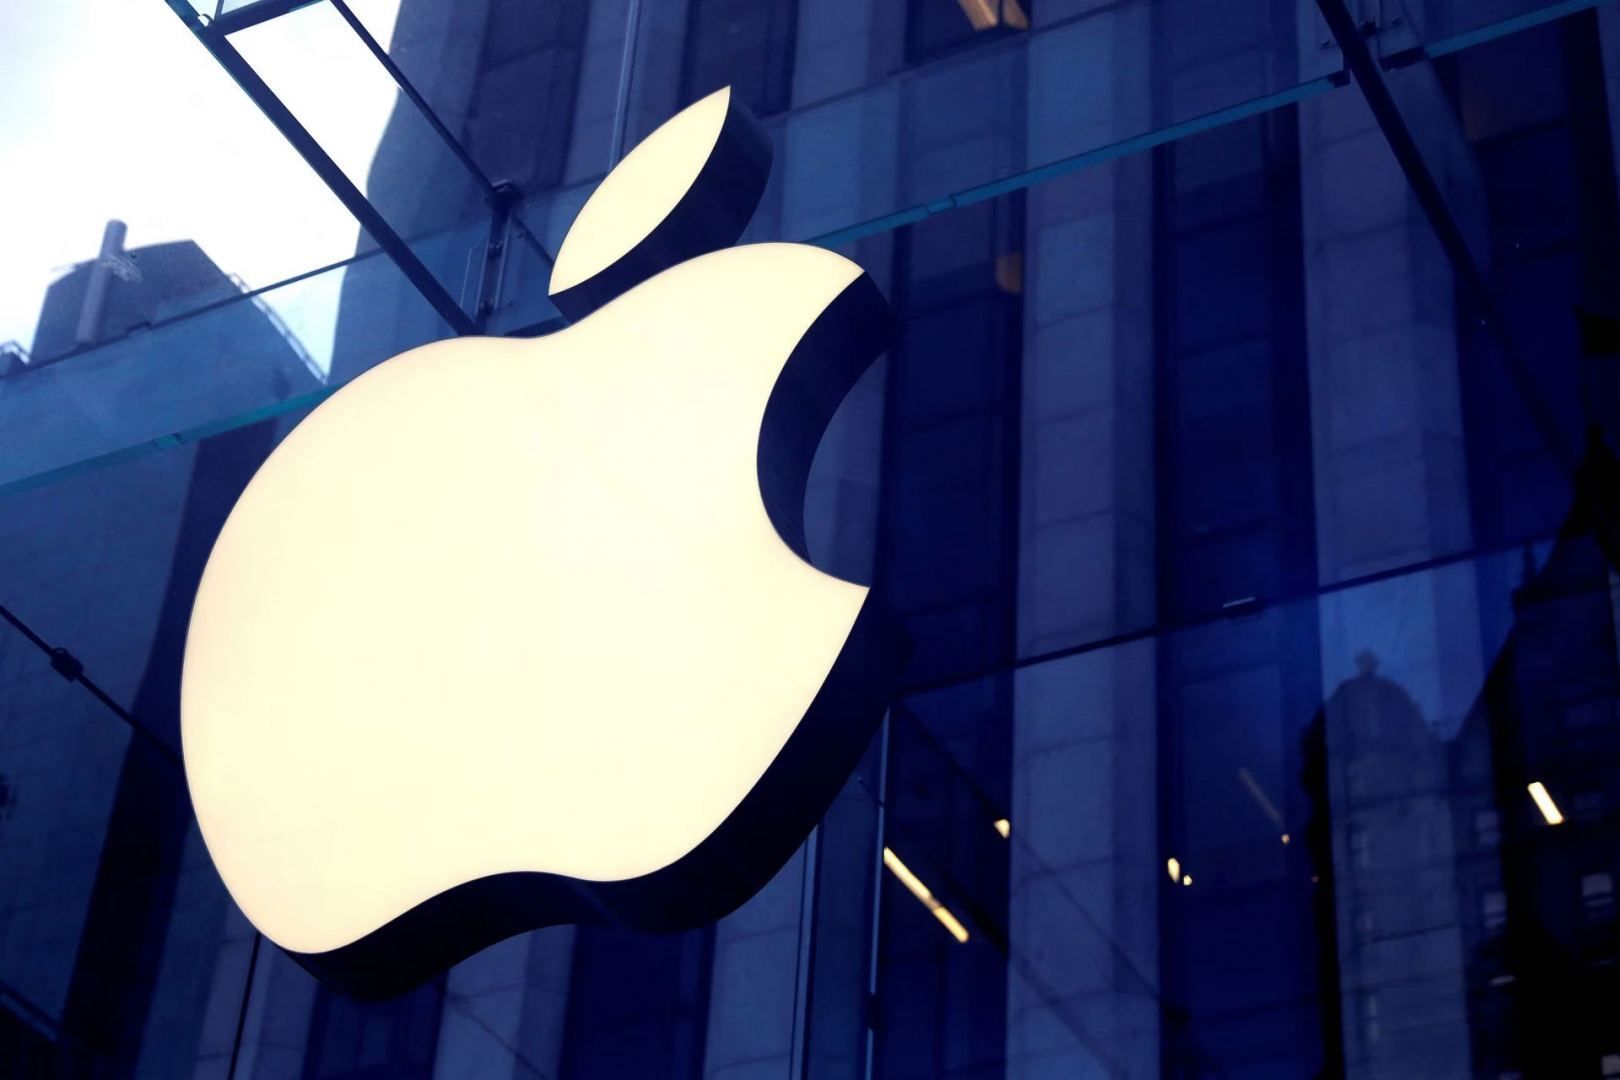 European Commission plans to fine Apple 500 million euros